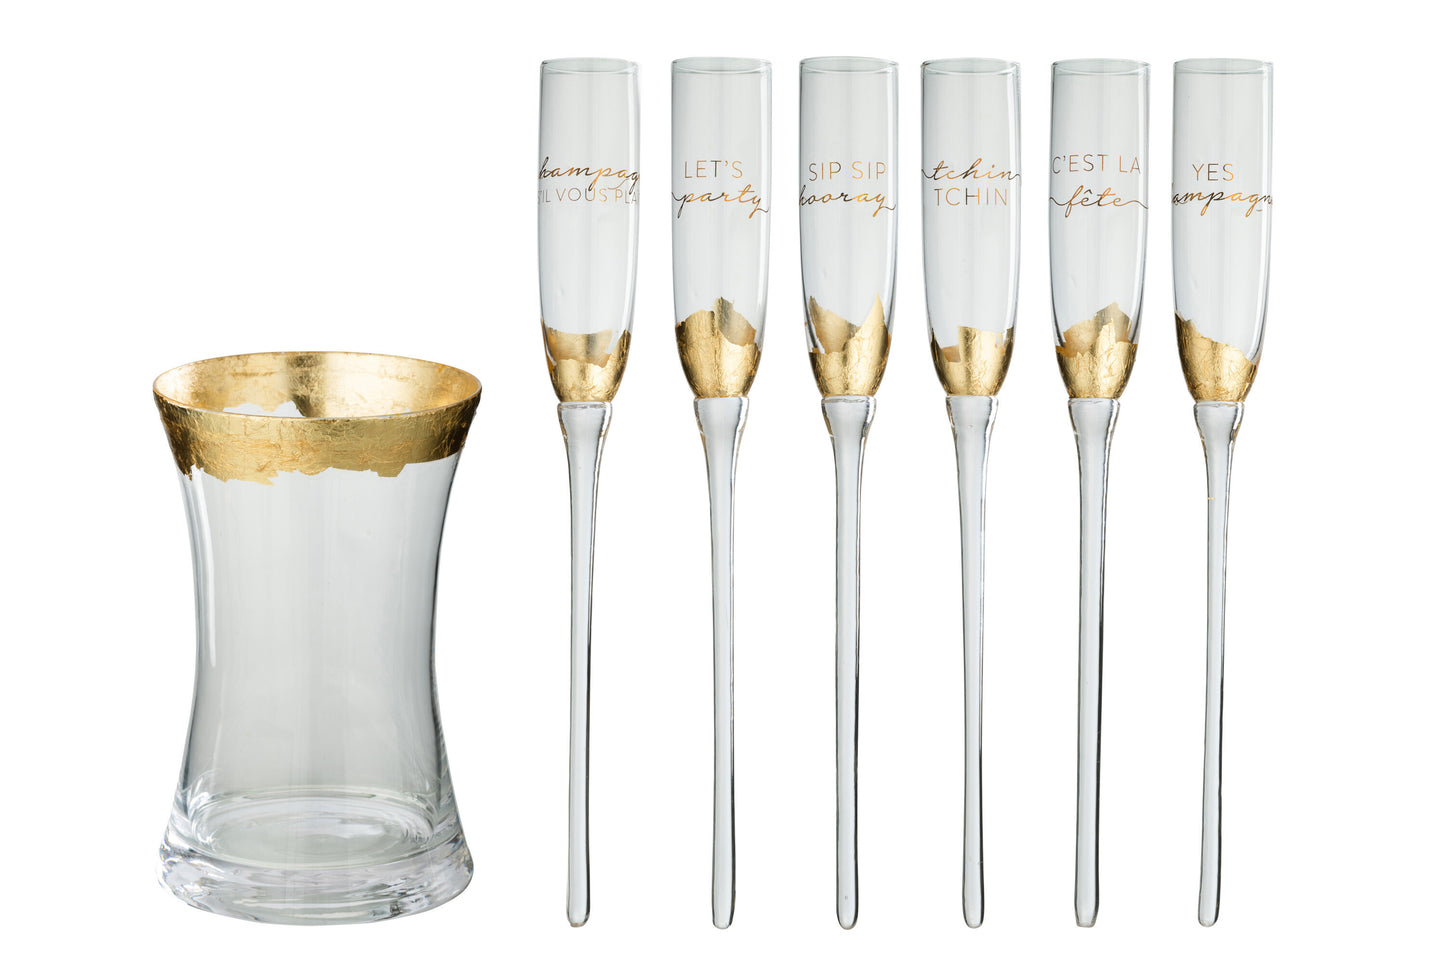 Bicchieri champagne più cestello in vetro (26x26x35,5) Jolipa